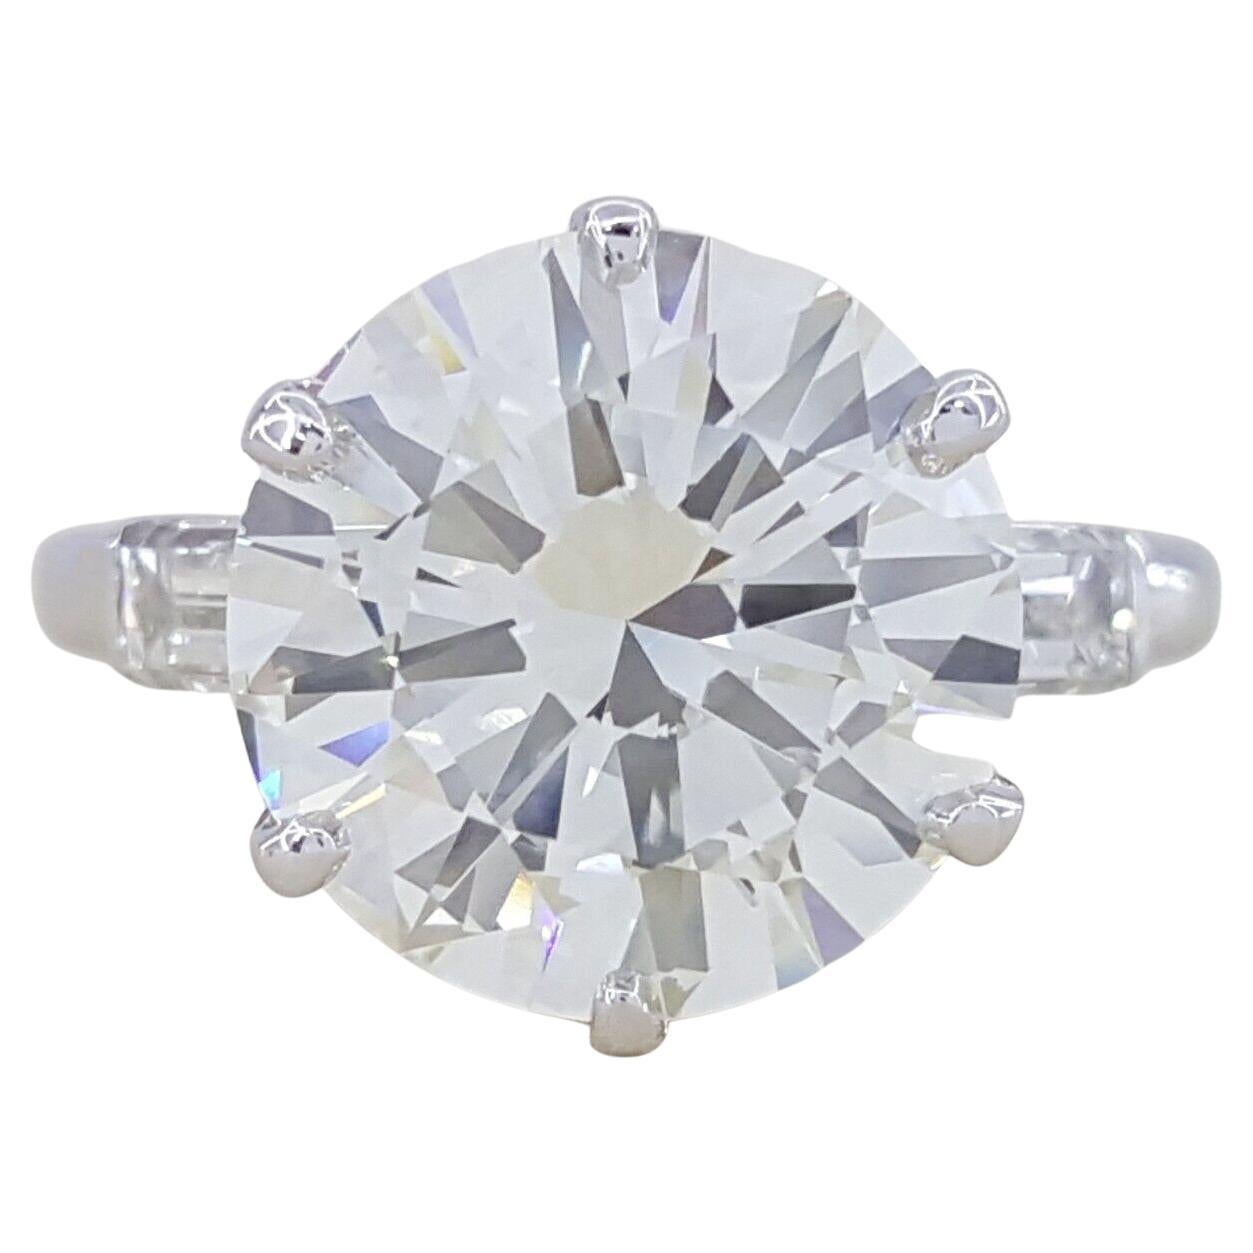 Bague de fiançailles 3(three) à diamants ronds taillés en brillant. 

La bague pèse 4,9 grammes, taille 4,75, la pierre centrale est un diamant naturel de taille ronde et brillante. 

